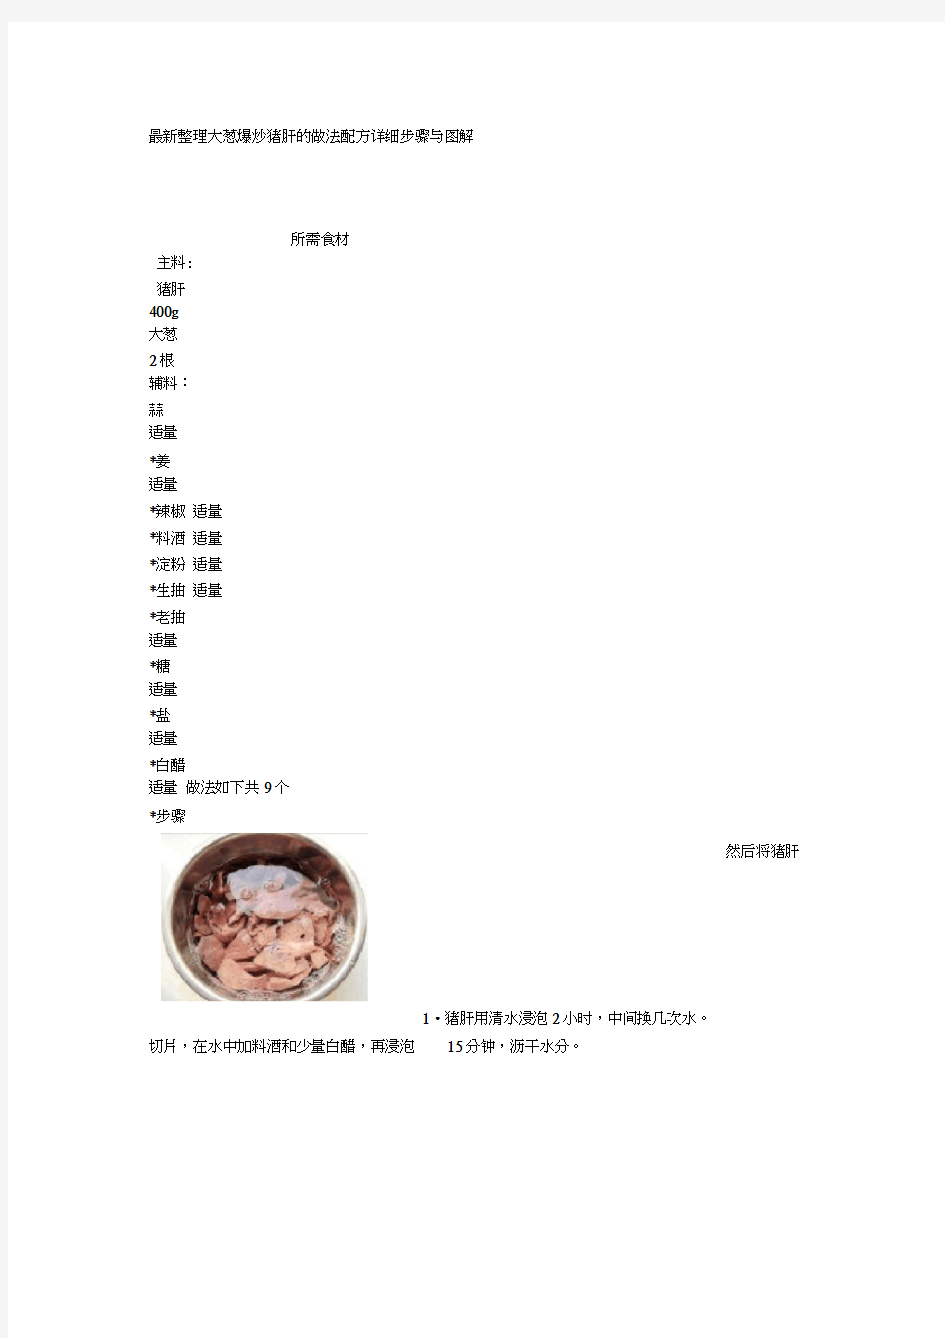 整理大葱爆炒猪肝的做法配方详细步骤与图解1.docx(20210201055713)